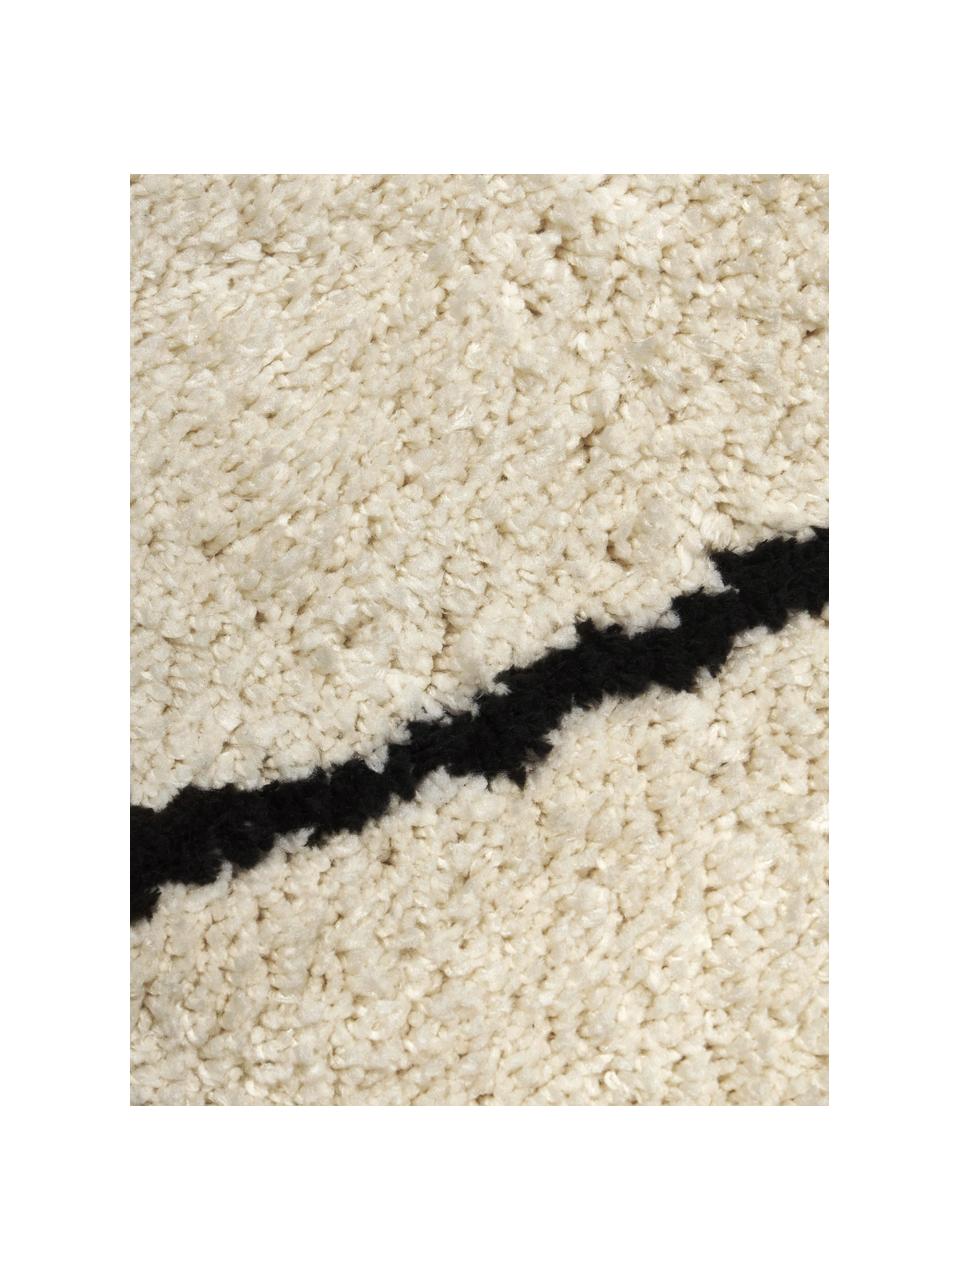 Runder flauschiger Hochflor-Teppich Naima, handgetuftet, Flor: 100 % Polyester, Beige, Schwarz, Ø 120 cm (Größe S)